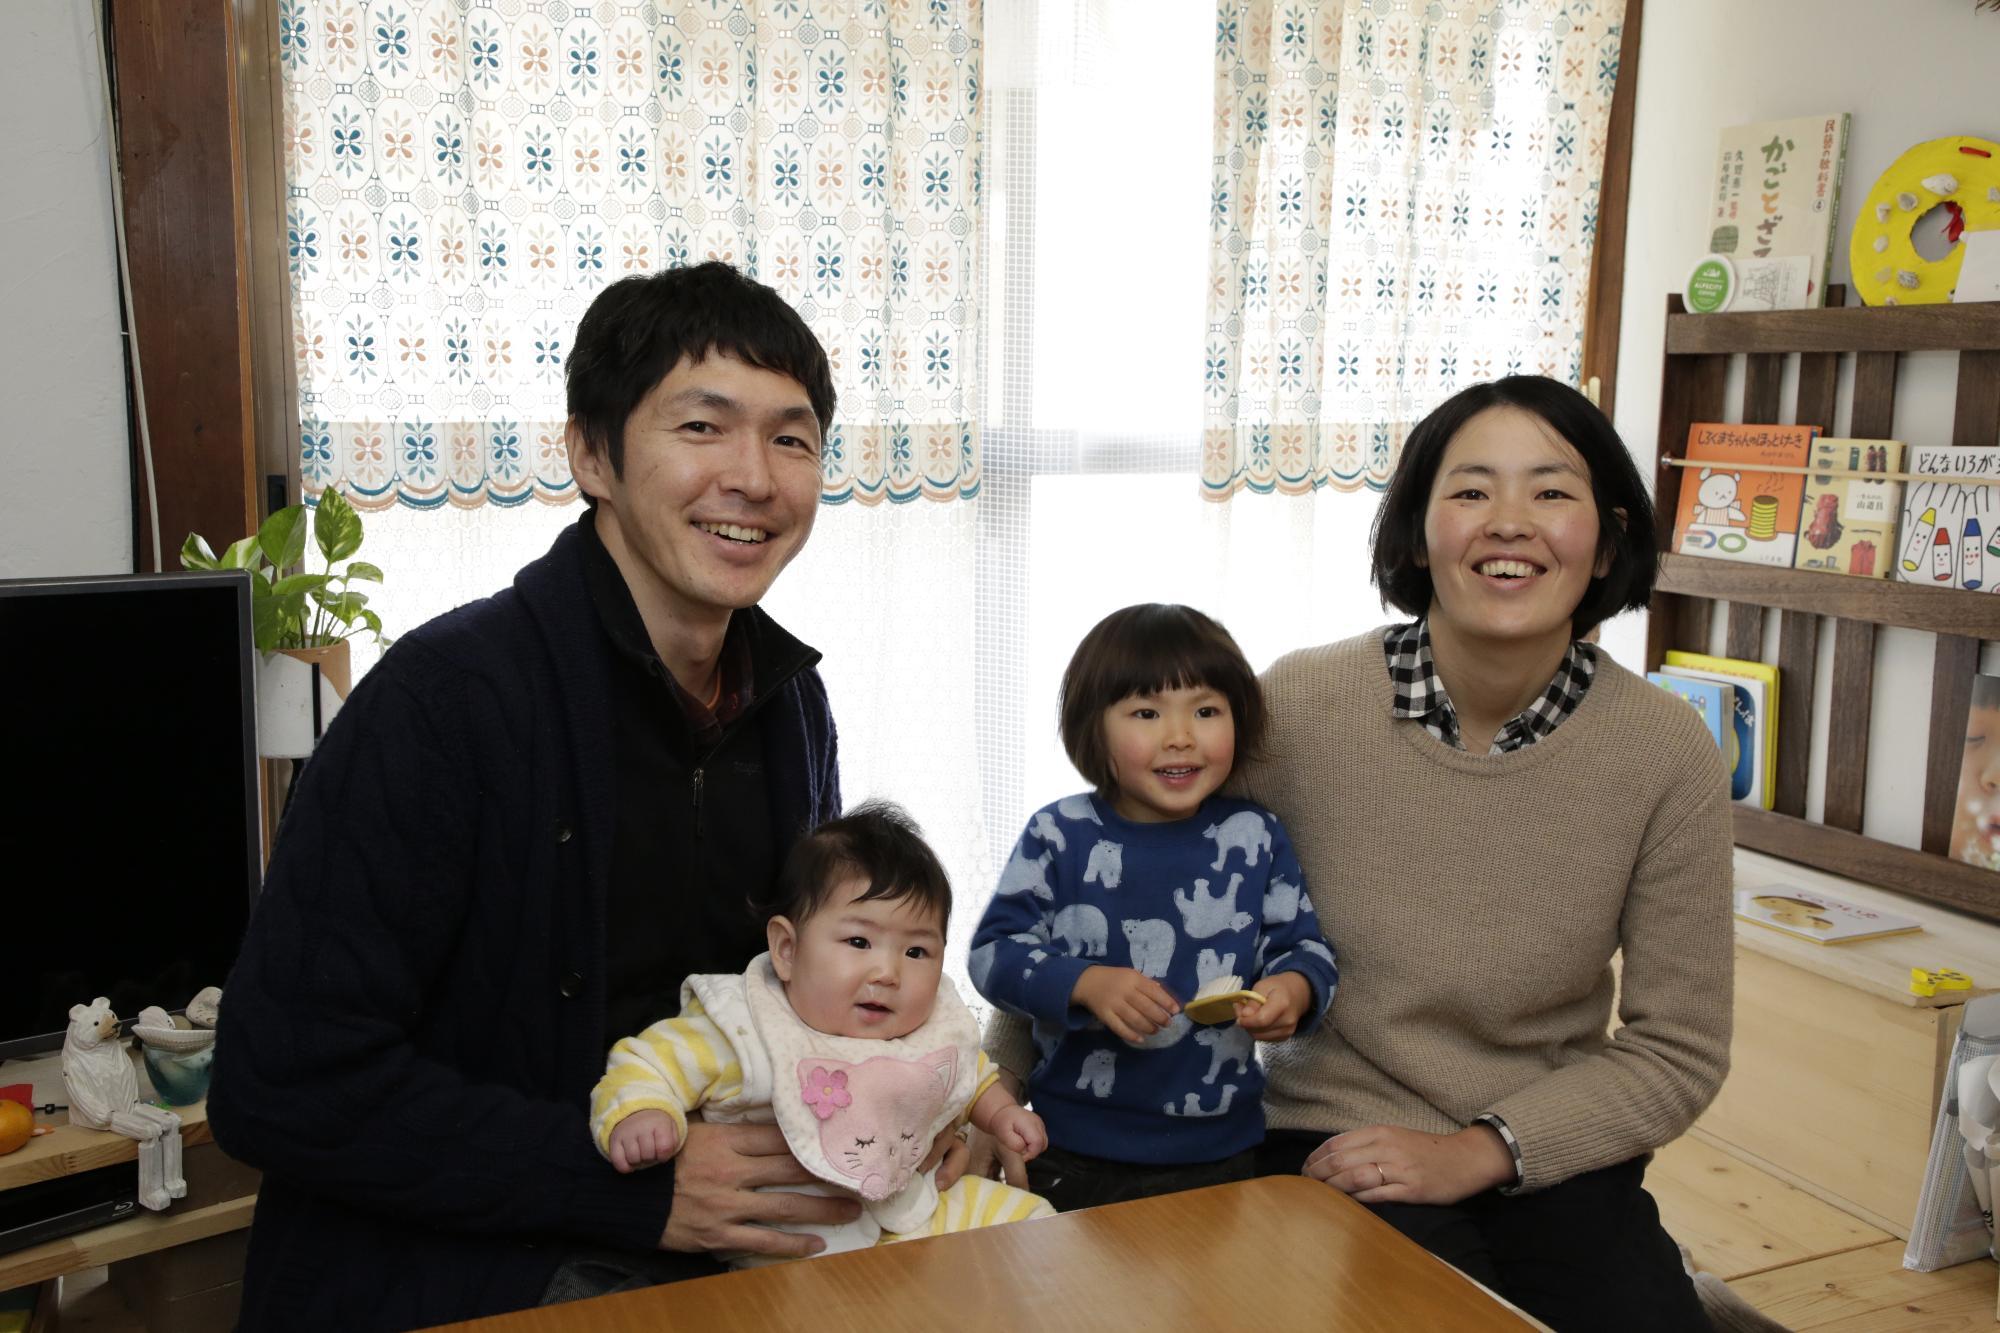 加藤さんご家族の写真